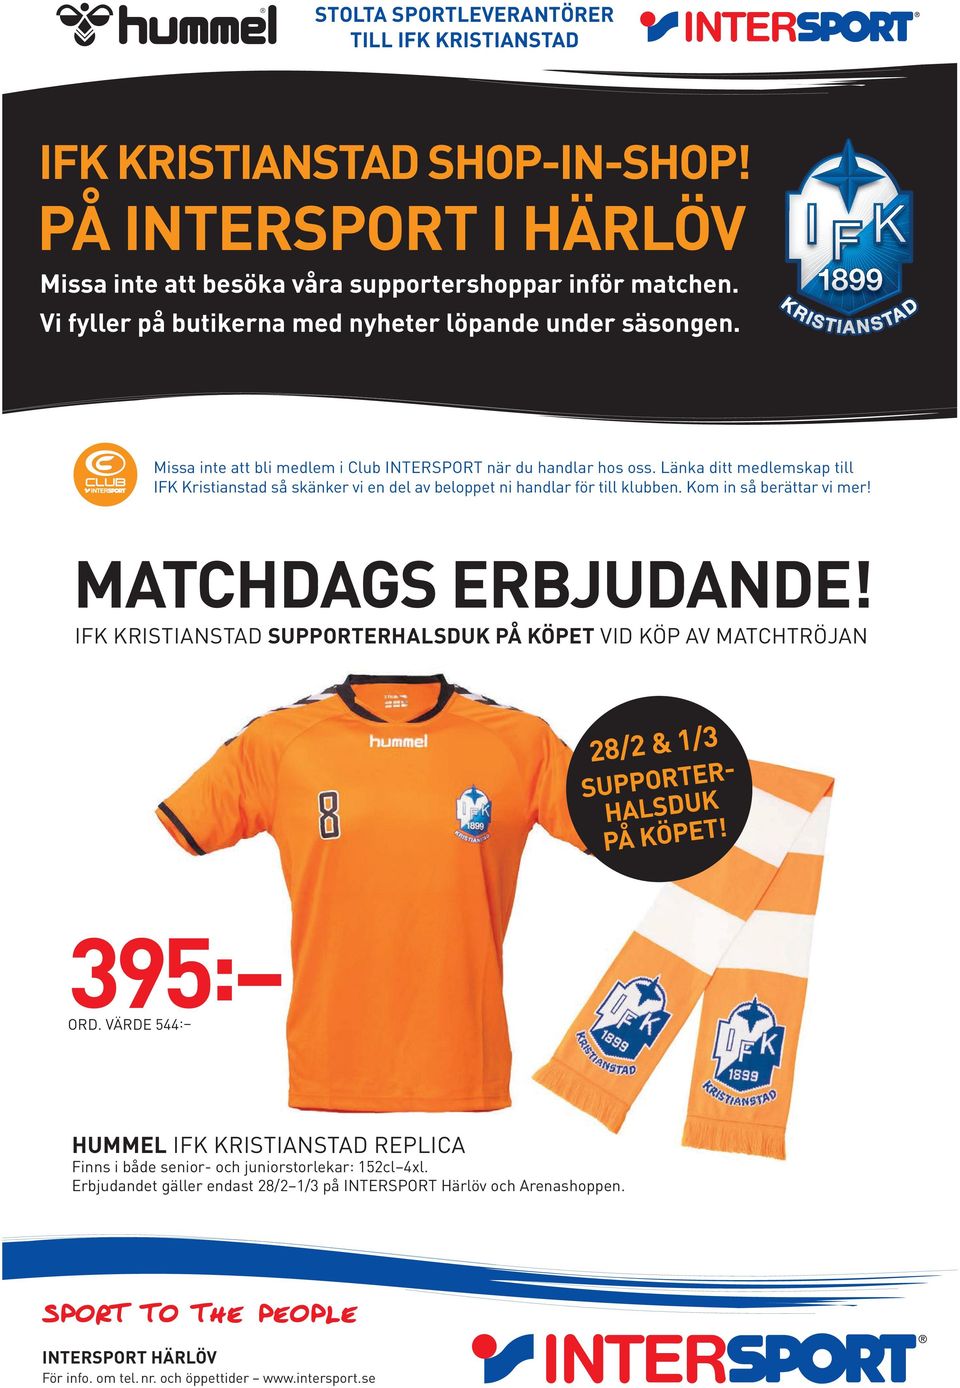 Länka ditt medlemskap till IFK Kristianstad så skänker vi en del av beloppet ni handlar för till klubben. Kom in så berättar vi mer! MATCHDAGS ERBJUDANDE!